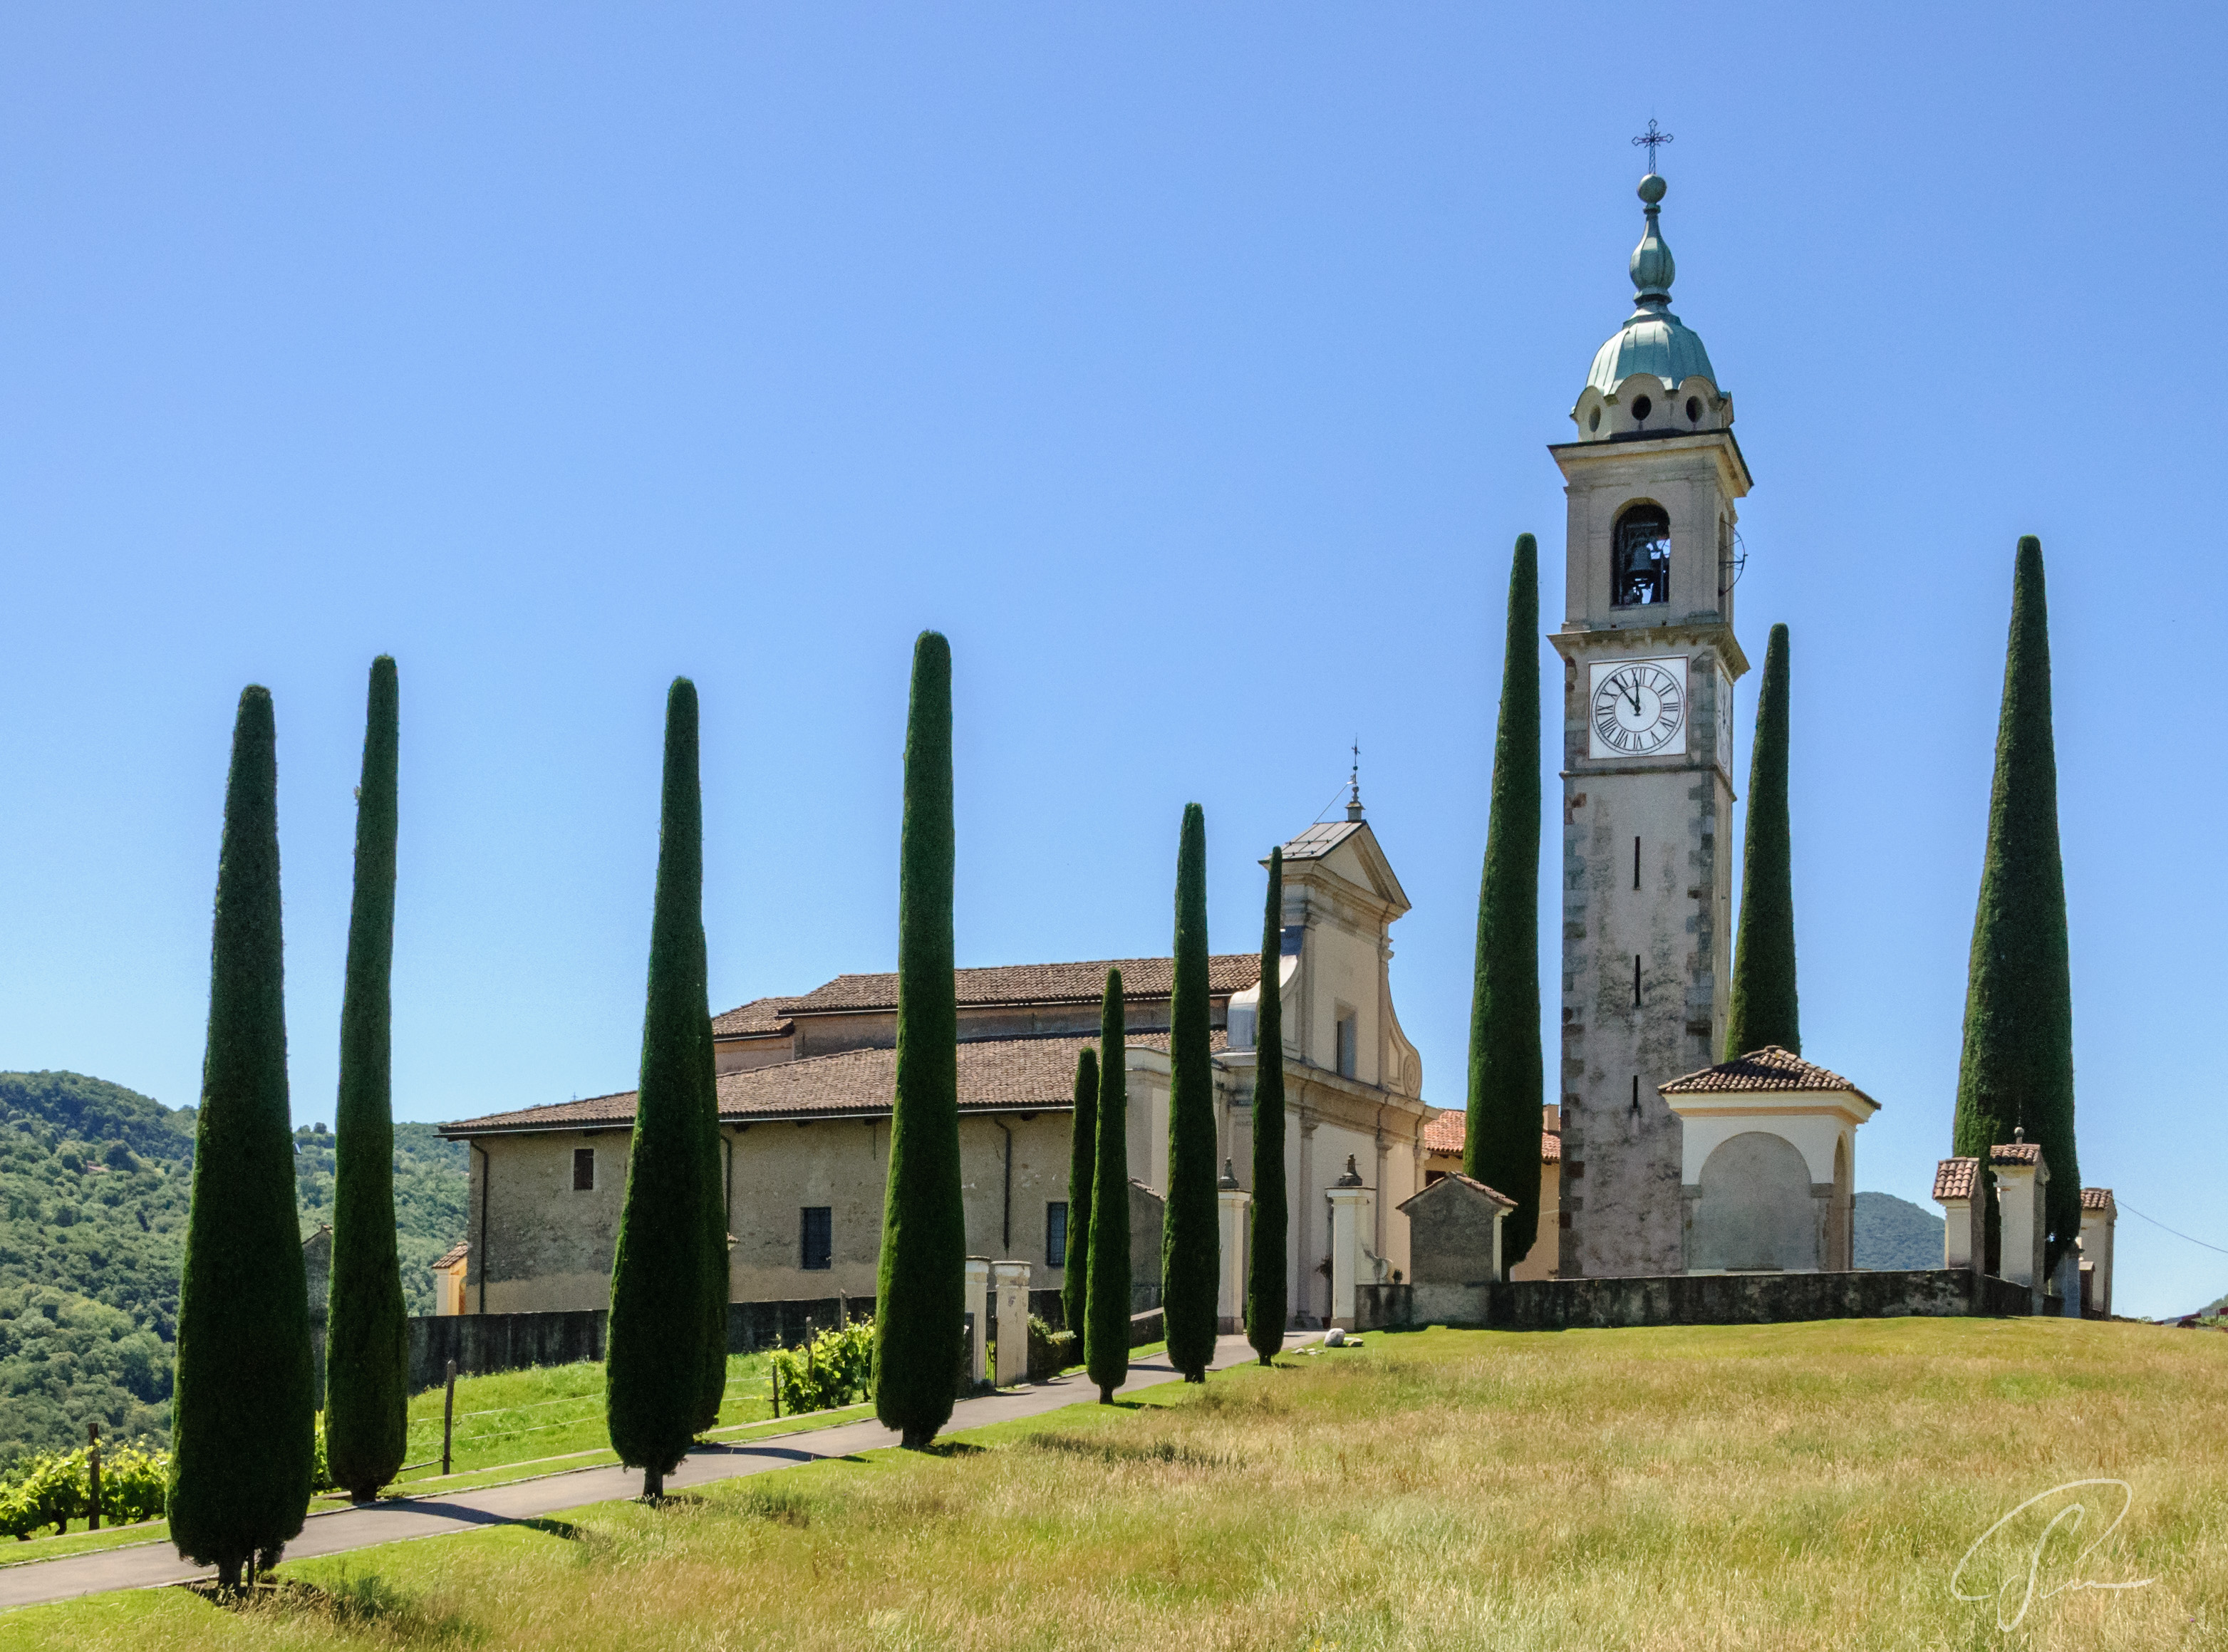 Kirche St Abbondio in Montagnola, eingerahmt von Zypressen